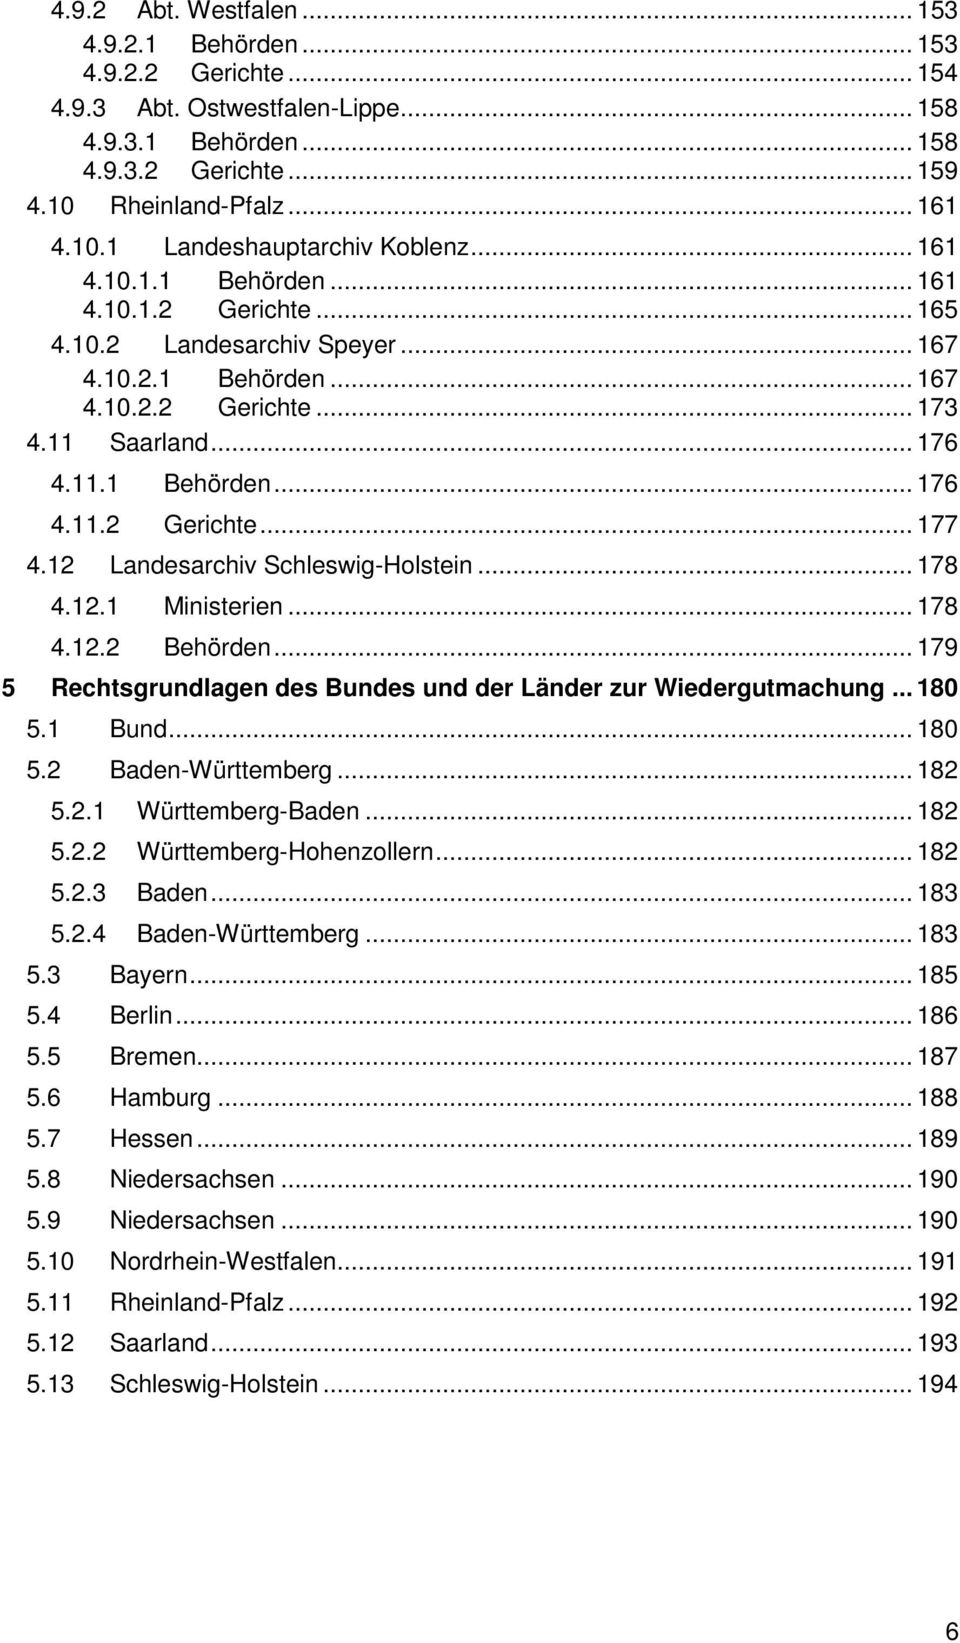 12 Landesarchiv Schleswig-Holstein... 178 4.12.1 Ministerien... 178 4.12.2 Behörden... 179 5 Rechtsgrundlagen des Bundes und der Länder zur Wiedergutmachung... 180 5.1 Bund... 180 5.2 Baden-Württemberg.